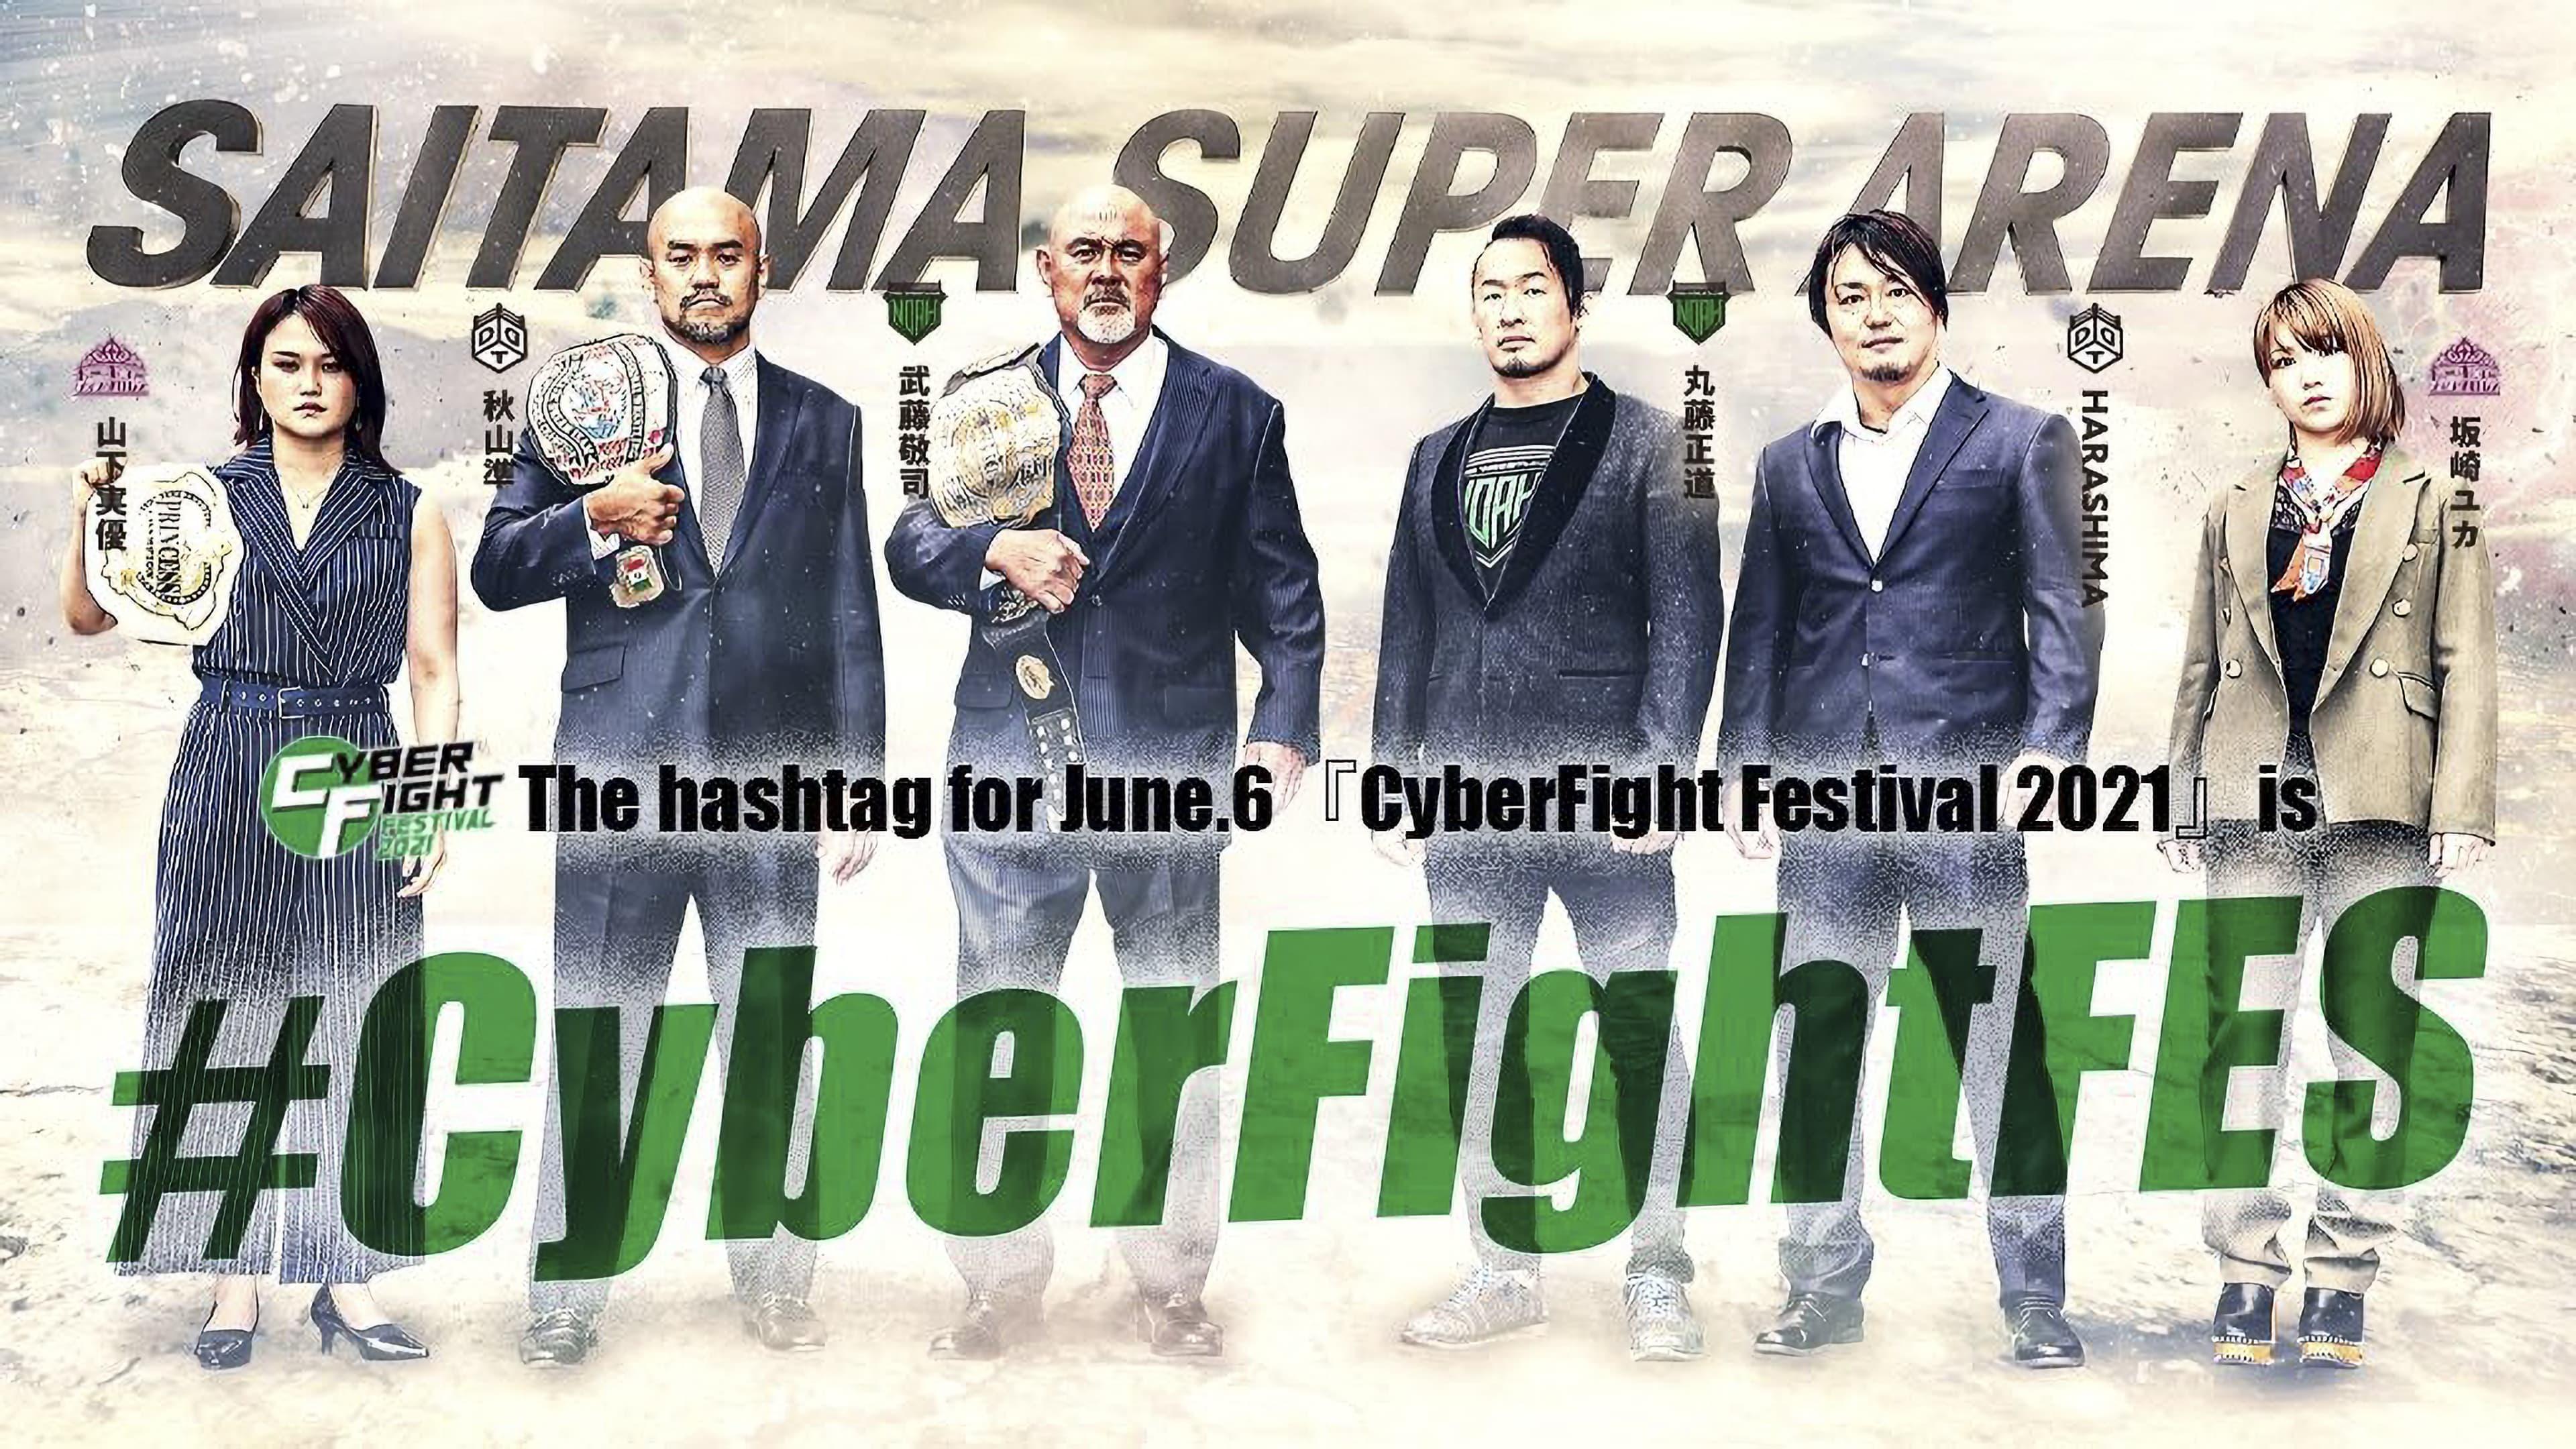 CyberFight Festival 2021 backdrop